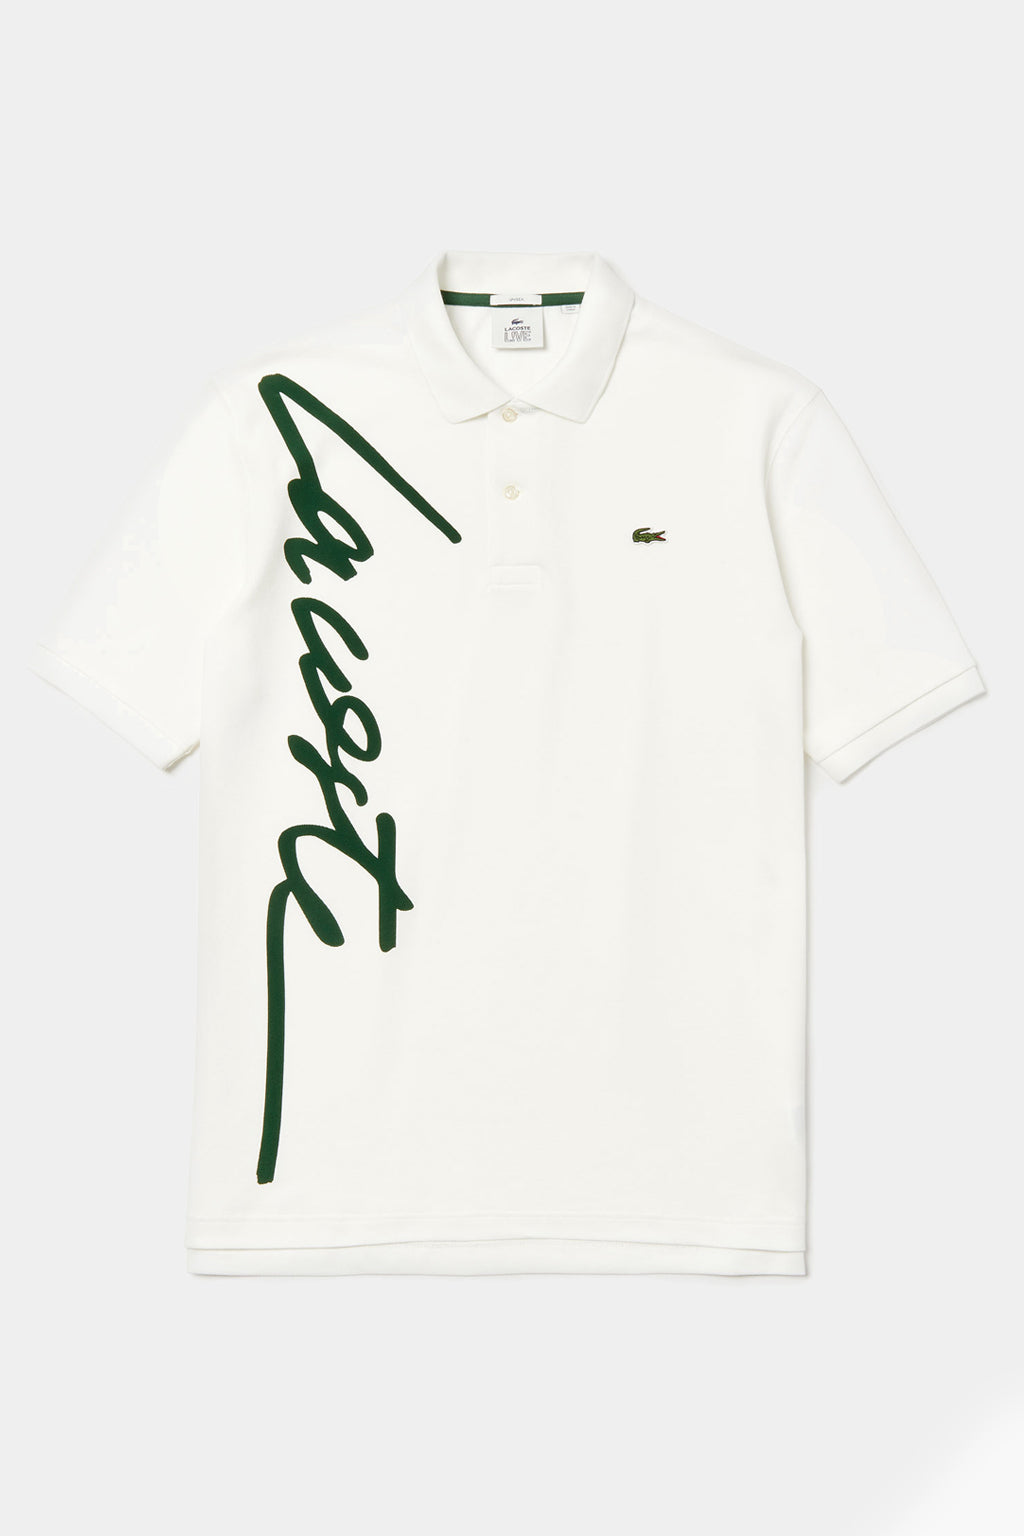 Lacoste - Live Loose Fit Signature Cotton Polo Shirt (Unisex)